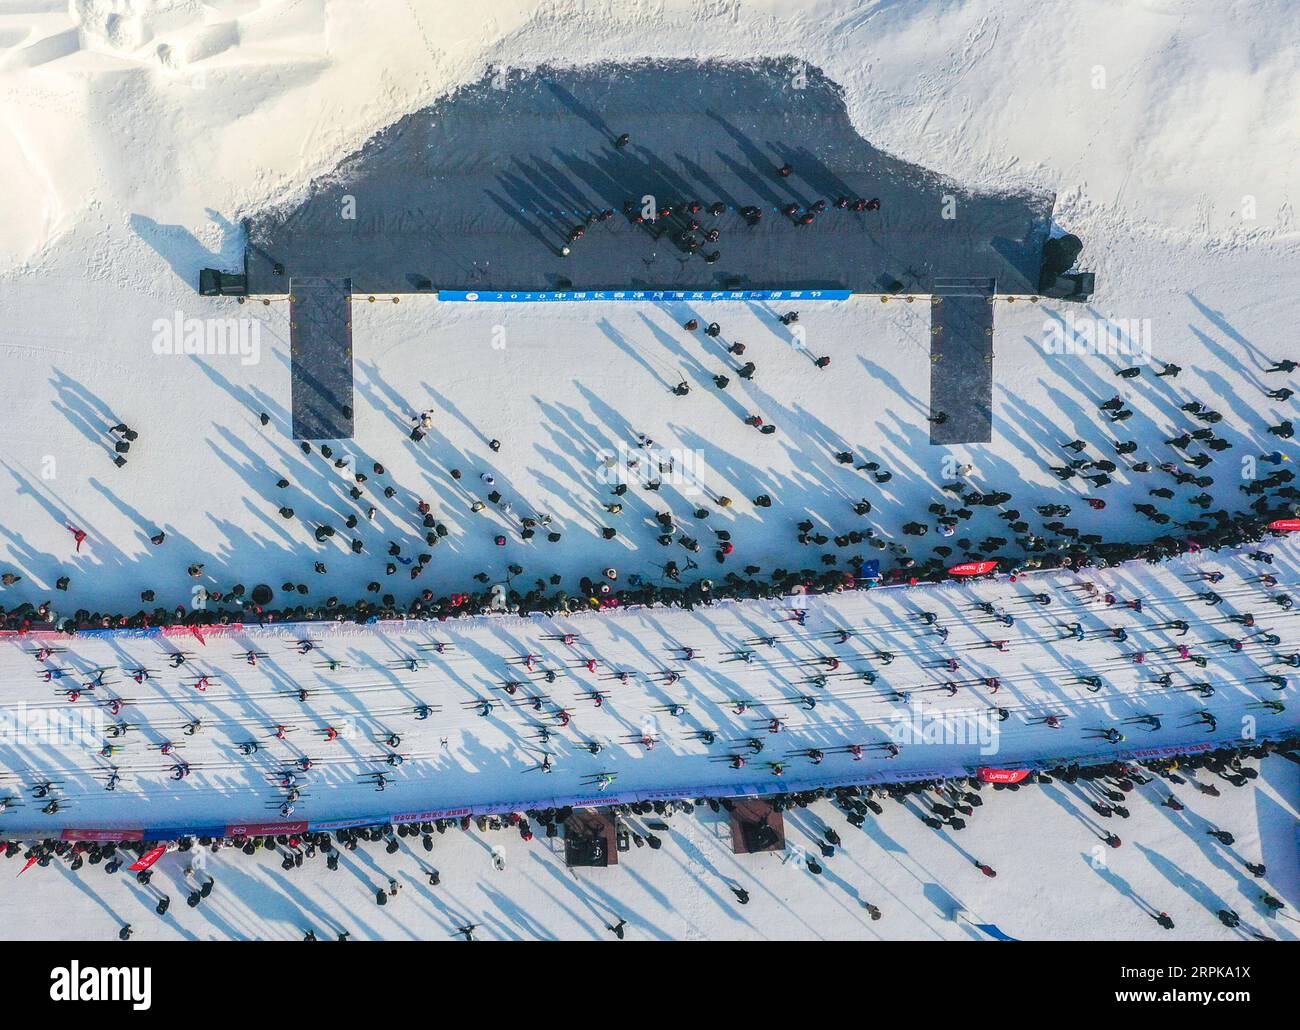 200105 -- PECHINO, 5 gennaio 2020 -- foto aerea scattata il 4 gennaio 2020 mostra gli atleti che partecipano alla gara di sci di fondo a Changchun Jingyuetan International Vasaloppet Ski Festival a Changchun, capitale della provincia di Jilin della Cina nord-orientale. XINHUA FOTO DEL GIORNO XuxChang PUBLICATIONxNOTxINxCHN Foto Stock